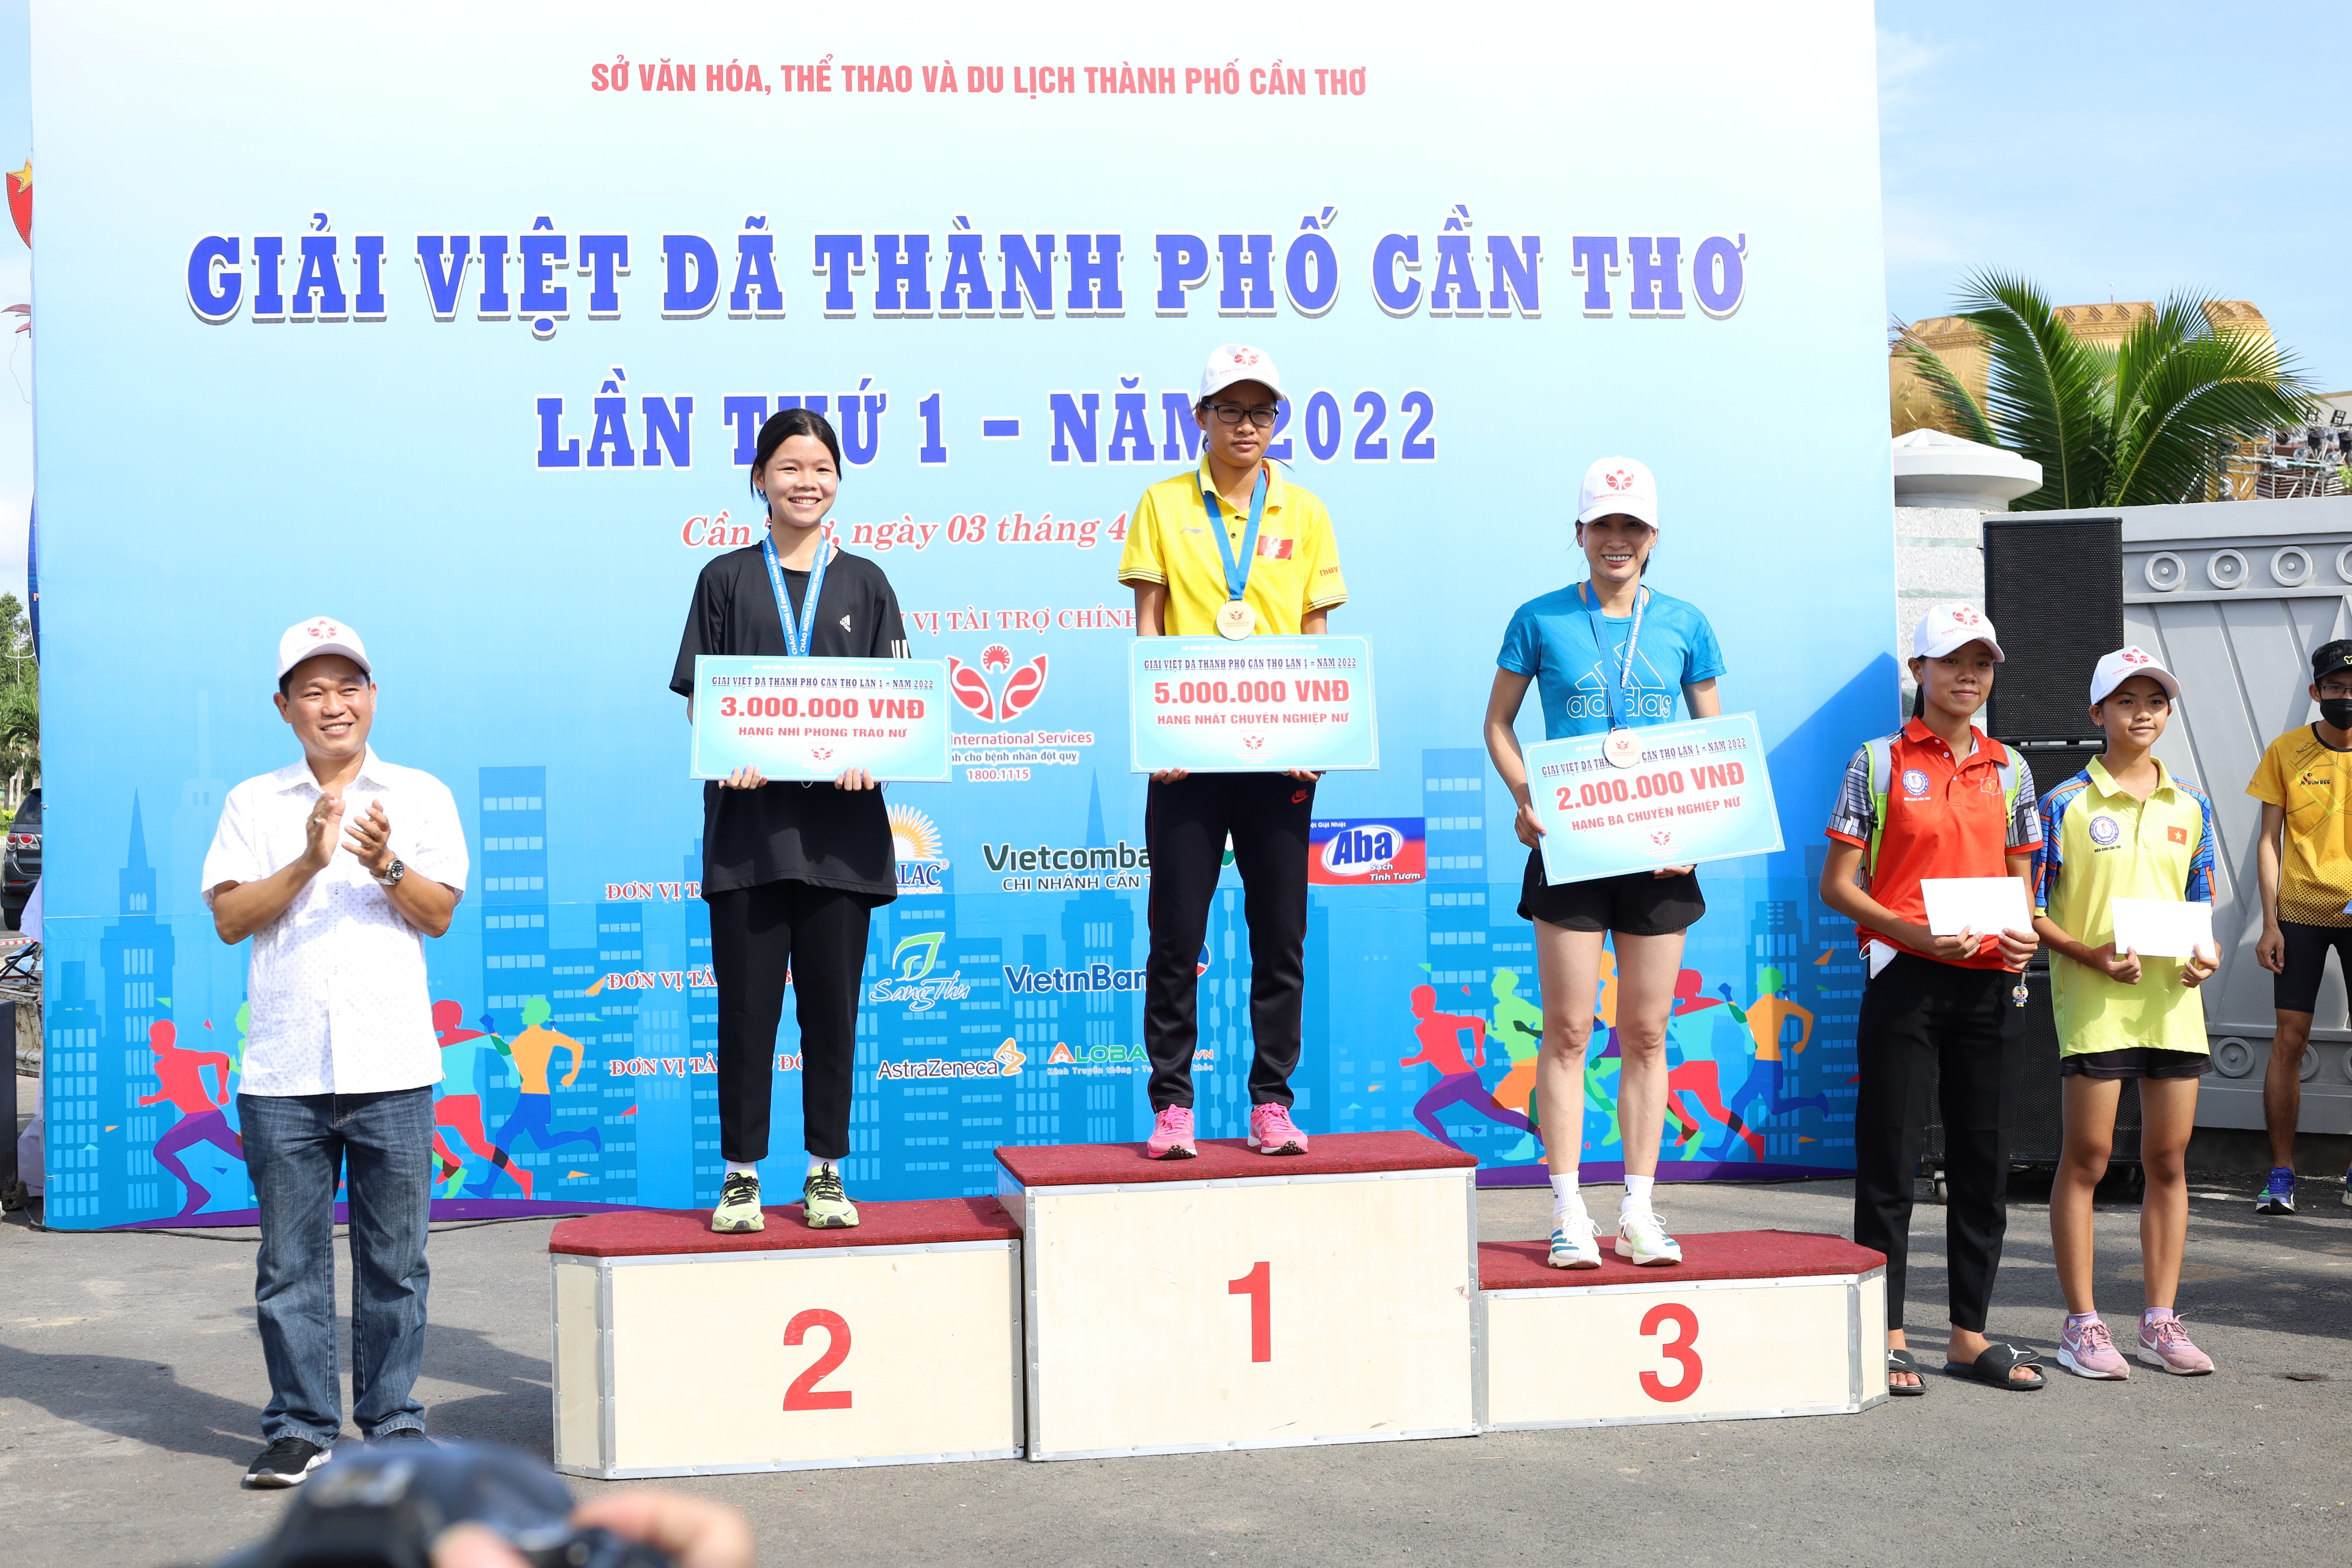 Trao giải cho các vận động viên đạt thứ hạng cao nội dung phong trào và nâng cao, với cự ly thi đấu Nữ 05 km.